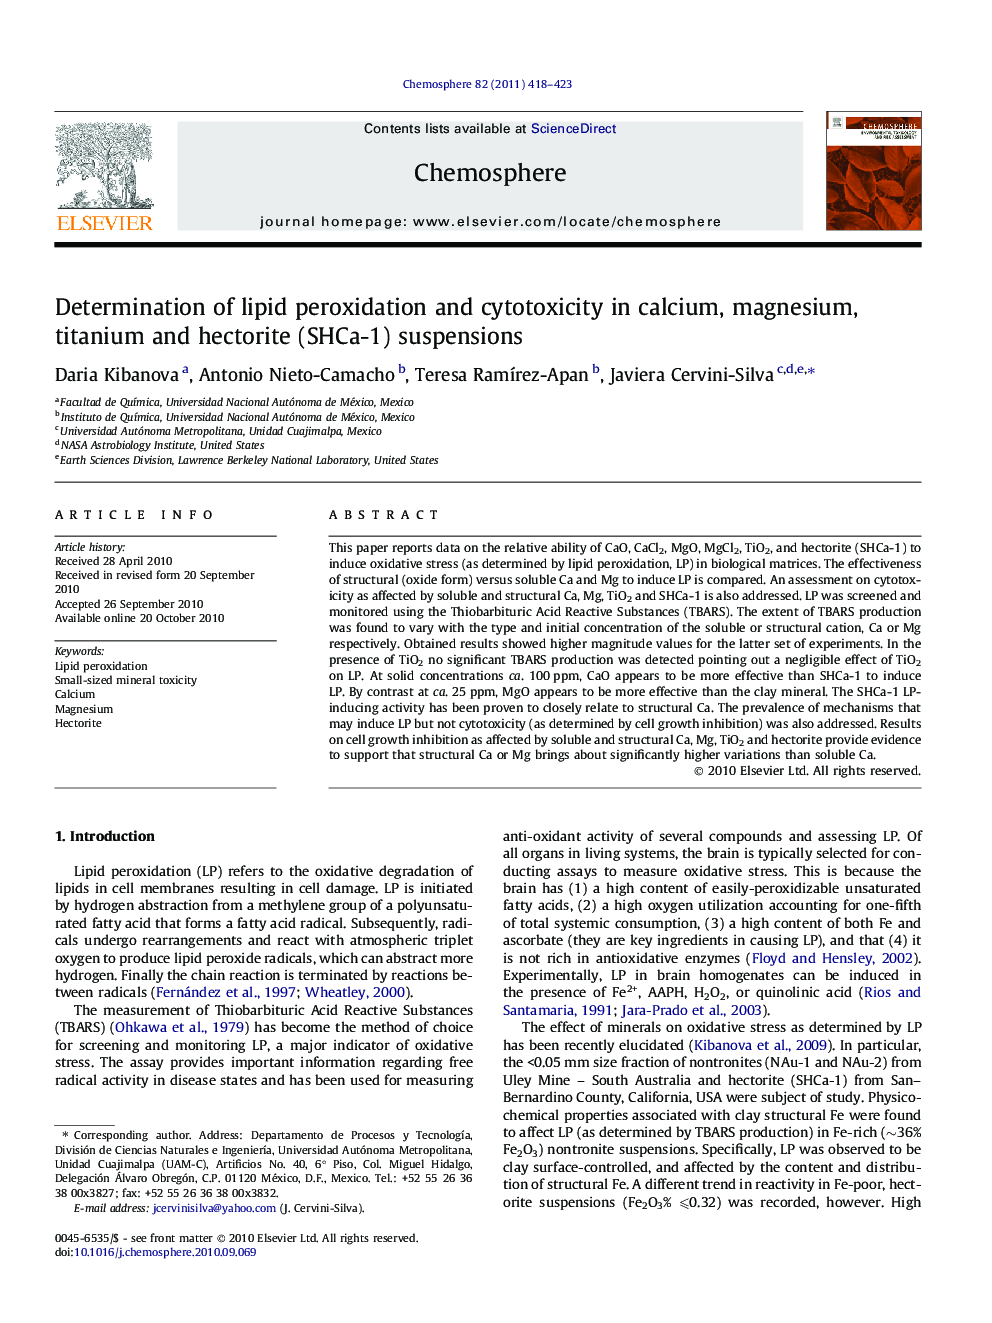 Determination of lipid peroxidation and cytotoxicity in calcium, magnesium, titanium and hectorite (SHCa-1) suspensions